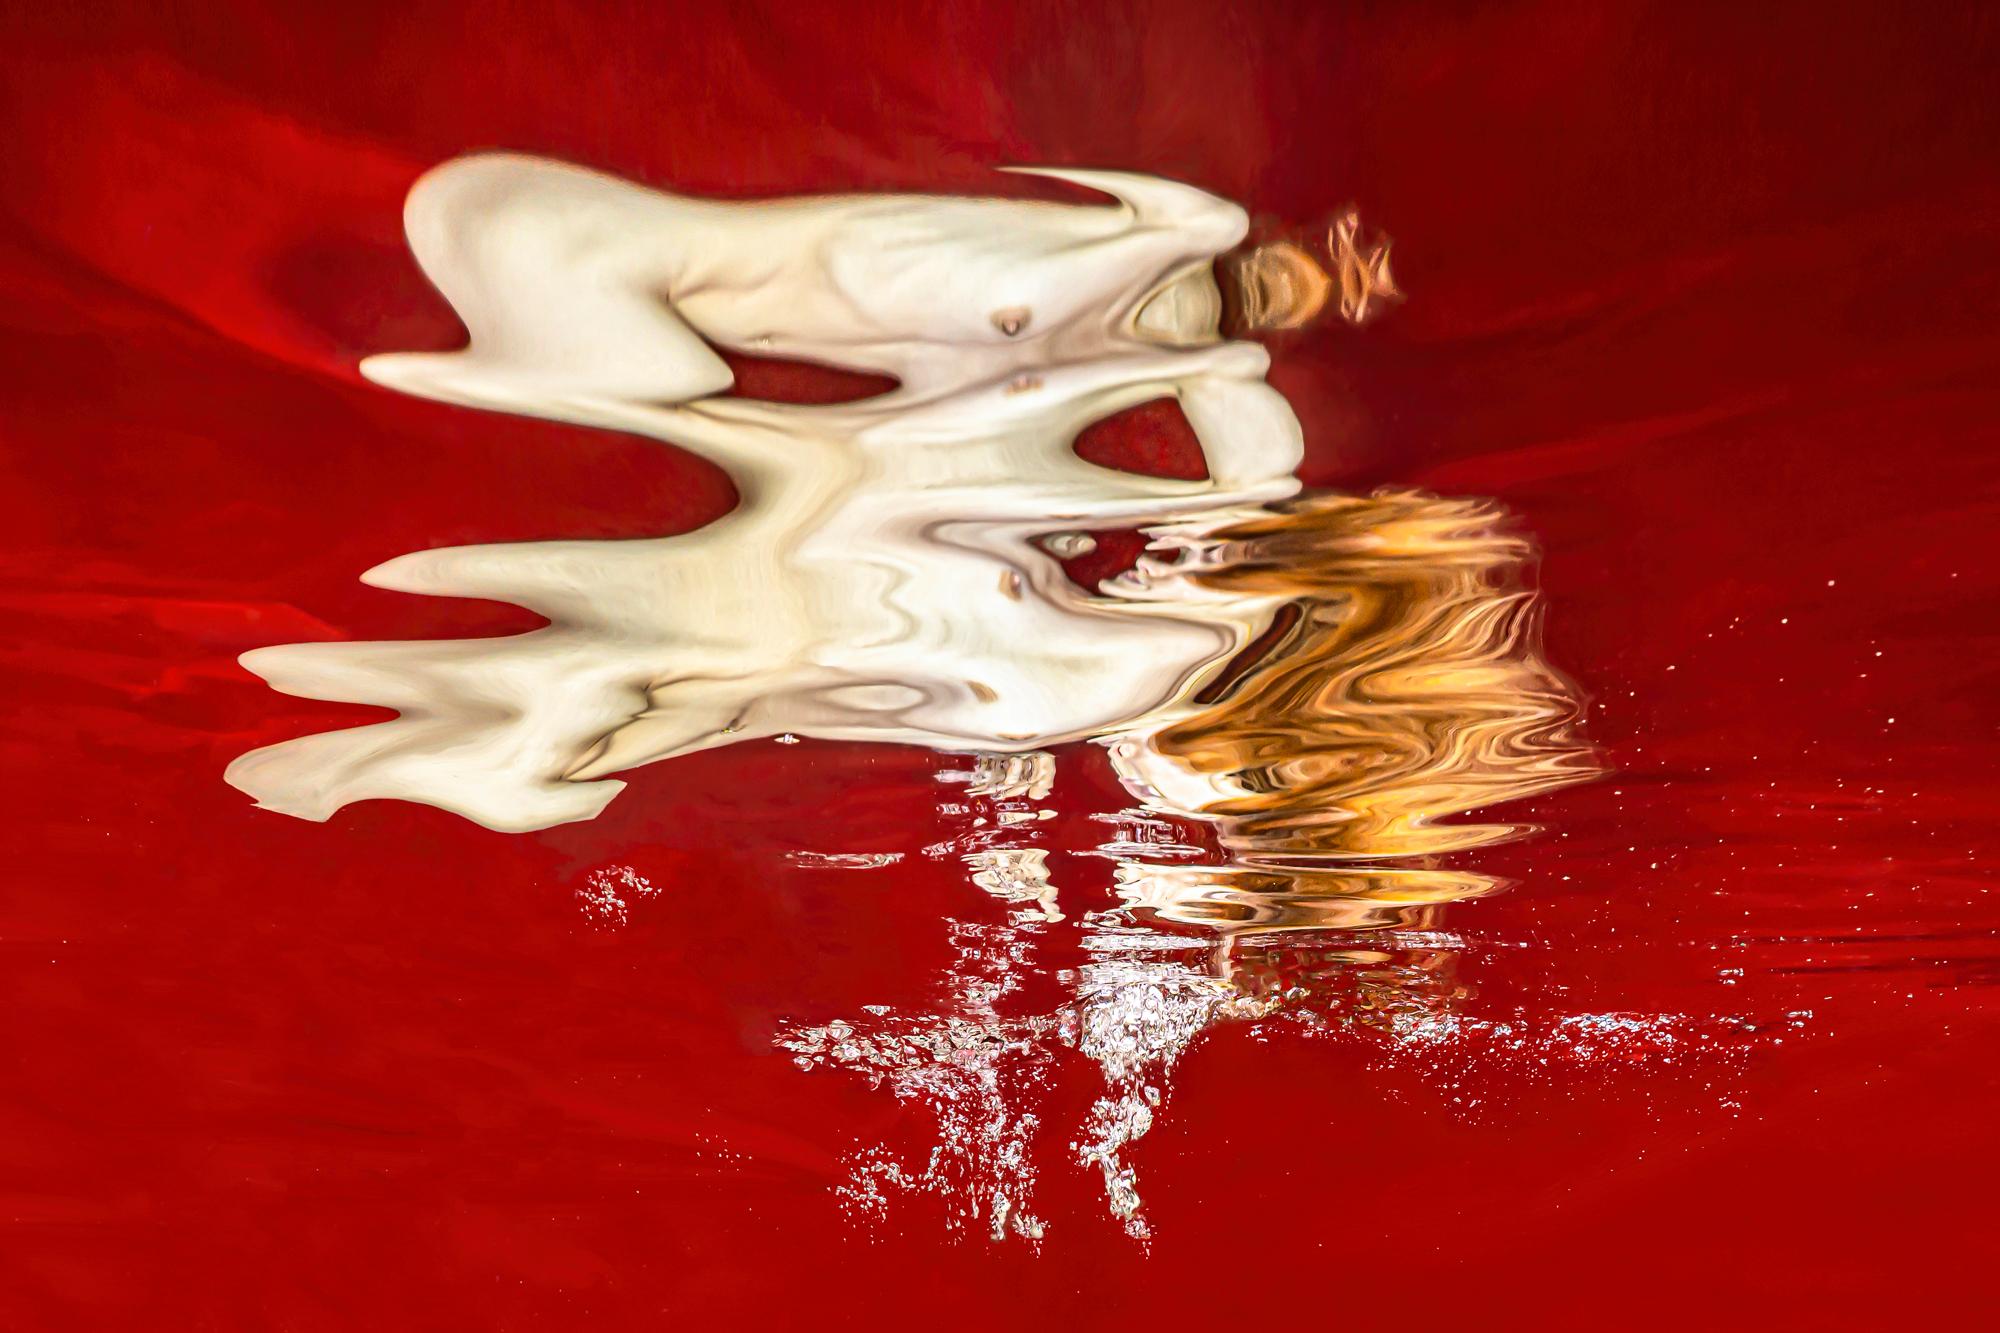 Nude Photograph Alex Sher - Photographie de nu sous-marine Spark - série REFLECTIONS - impression pigmentaire d'archives